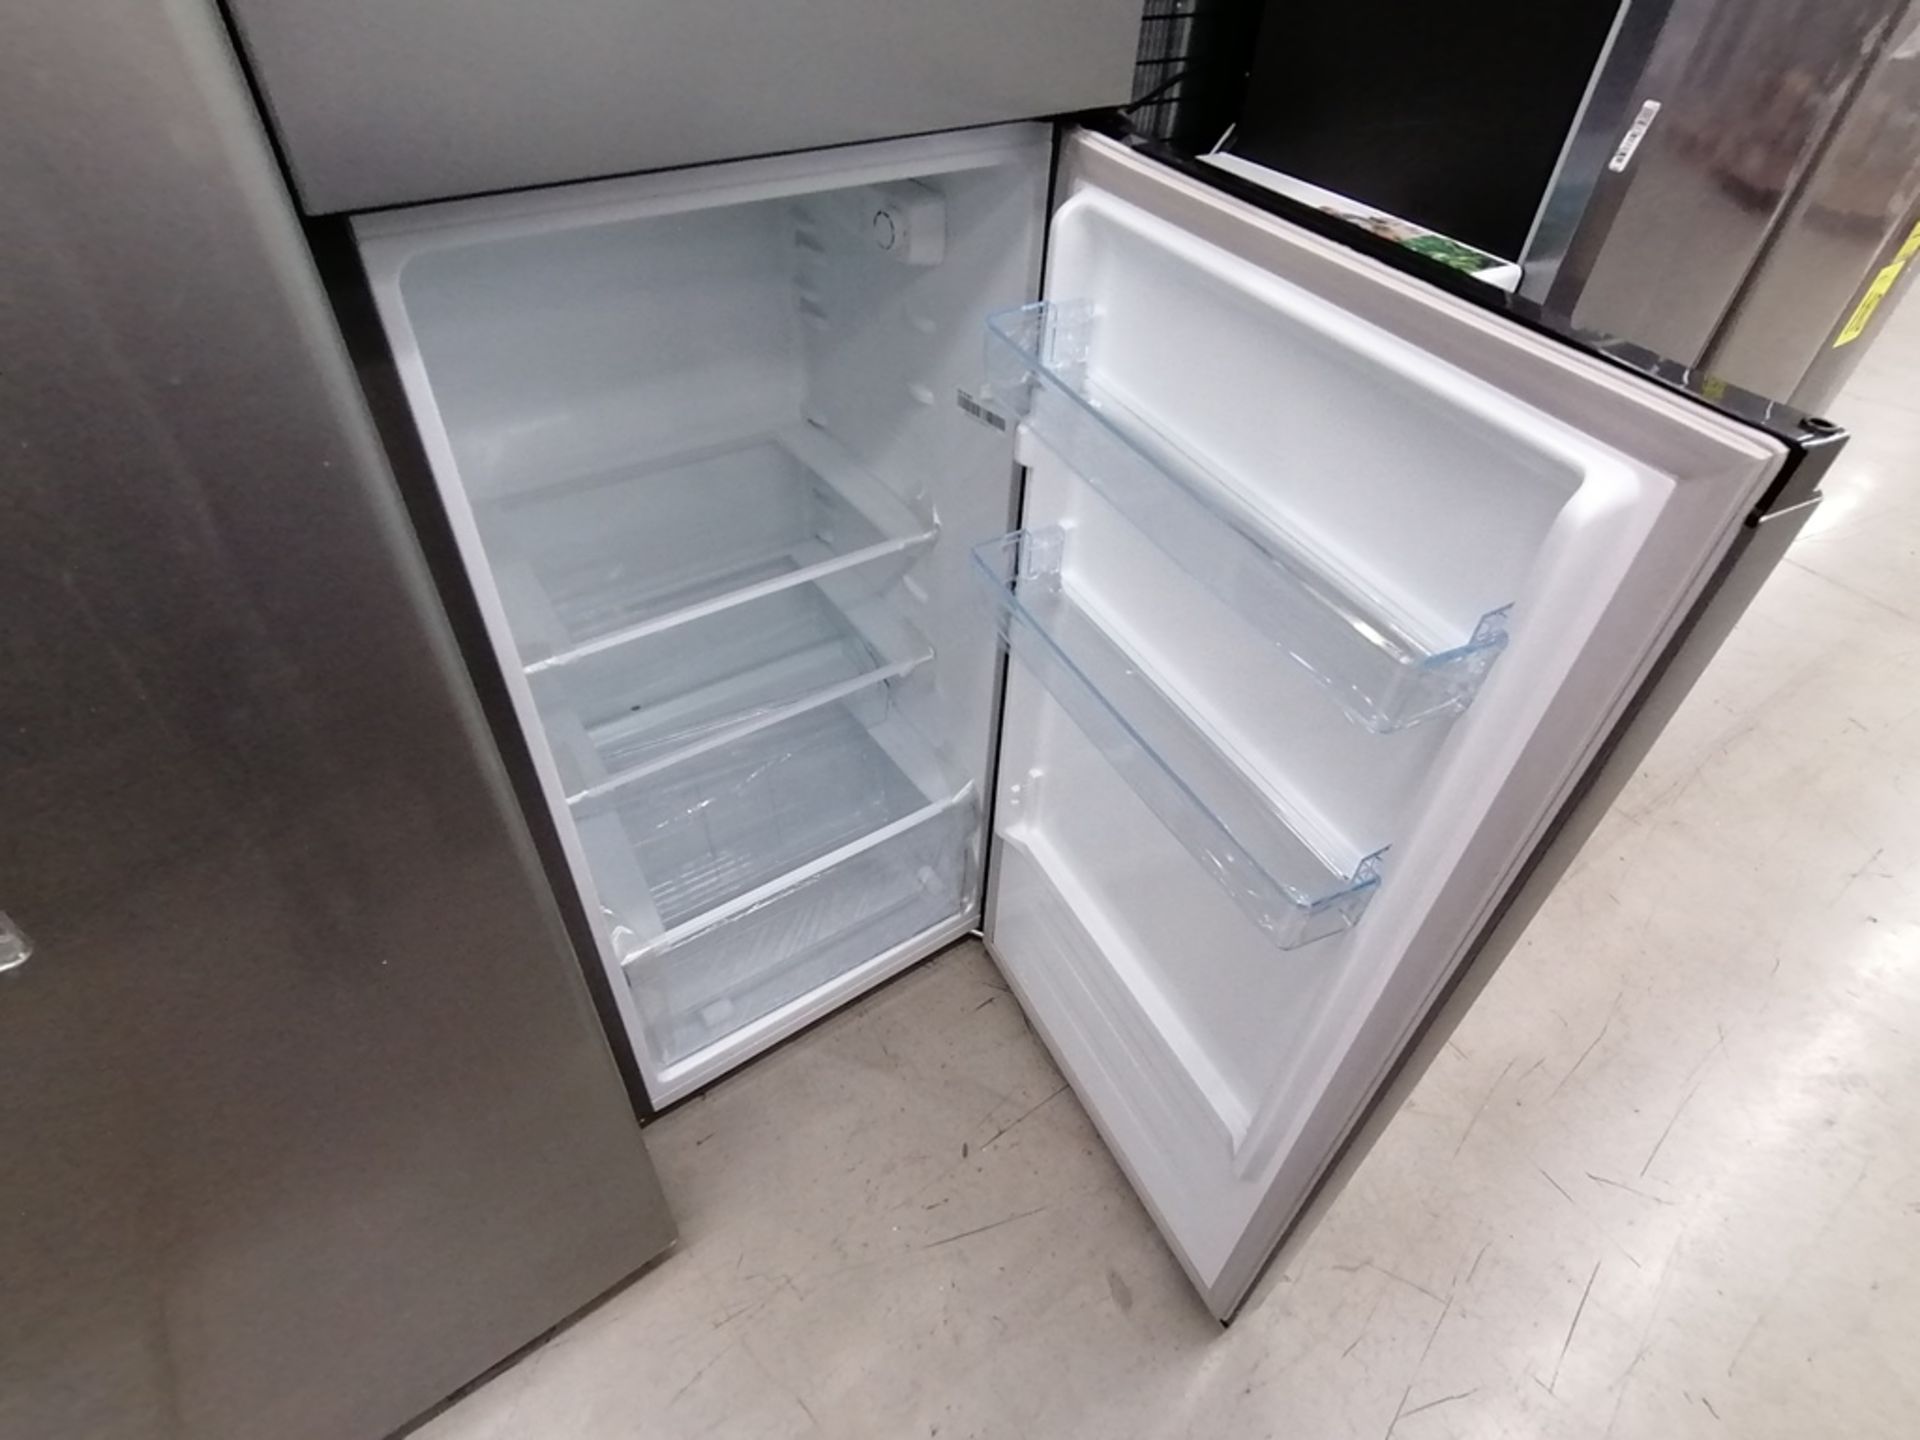 Lote de 2 refrigeradores incluye: 1 Refrigerador, Marca Winia, Modelo DFR40510GNDG, Serie MR21YN107 - Image 7 of 15